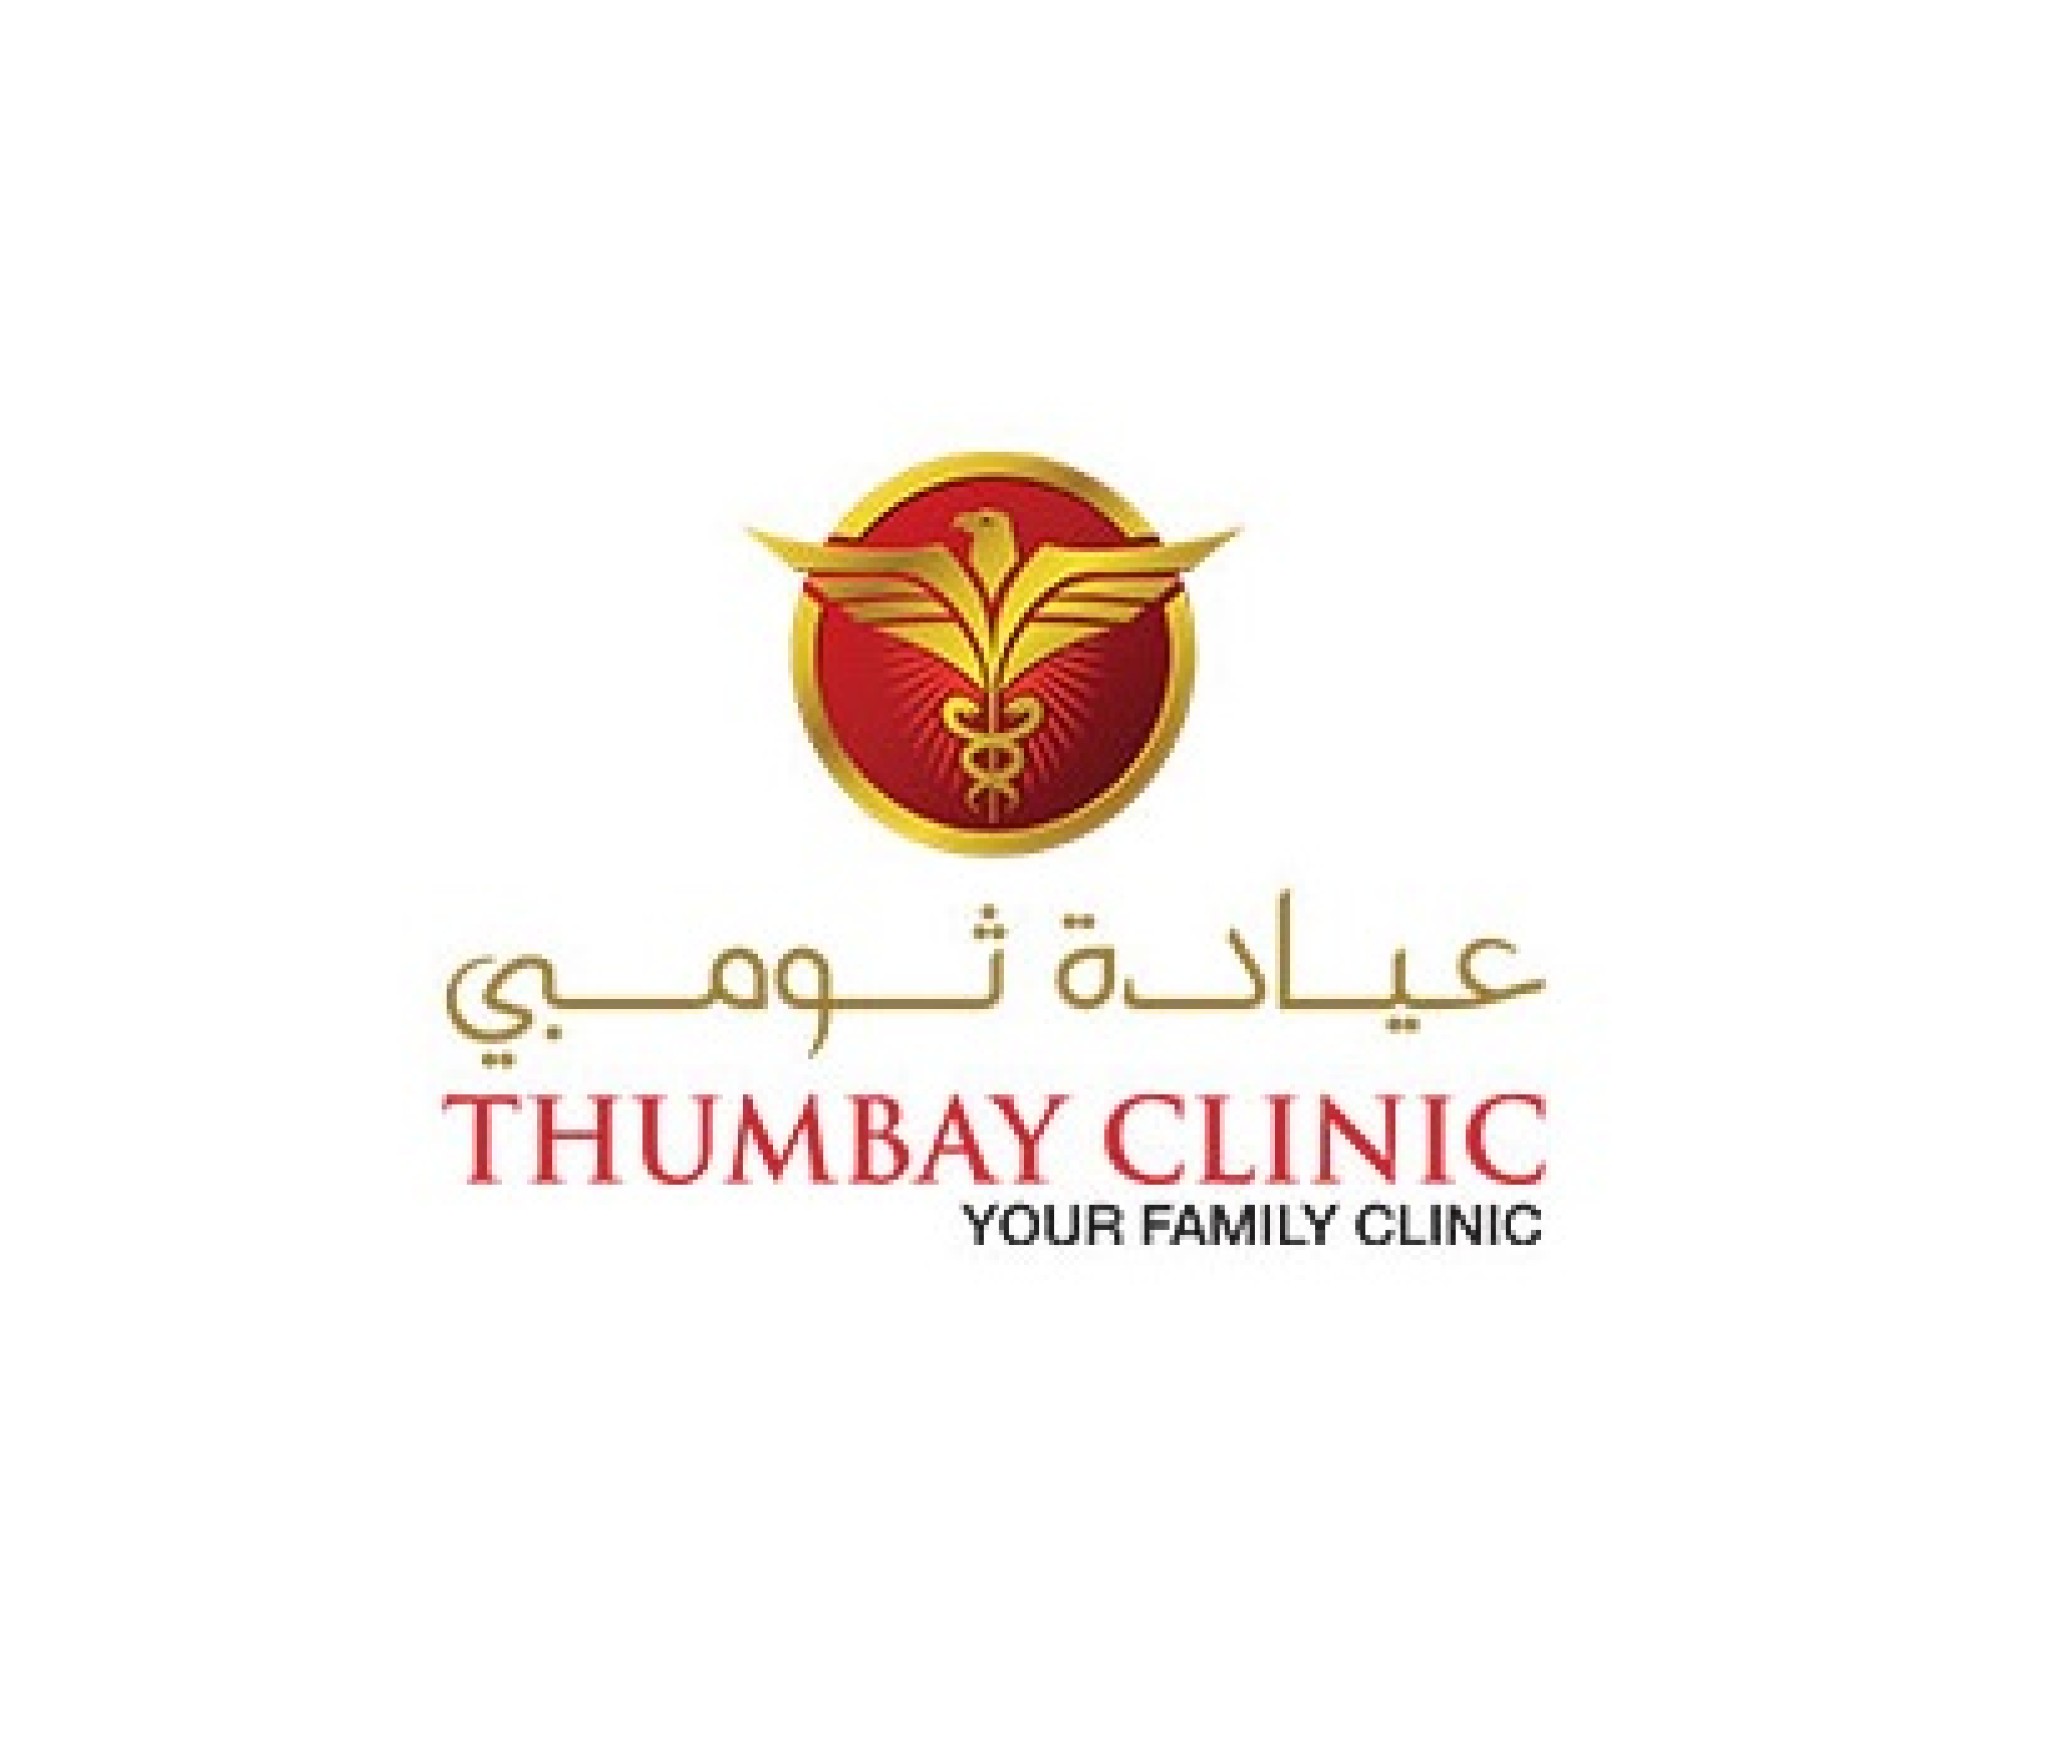 Thumbay Clinic, Abu Shagara – Sharjah